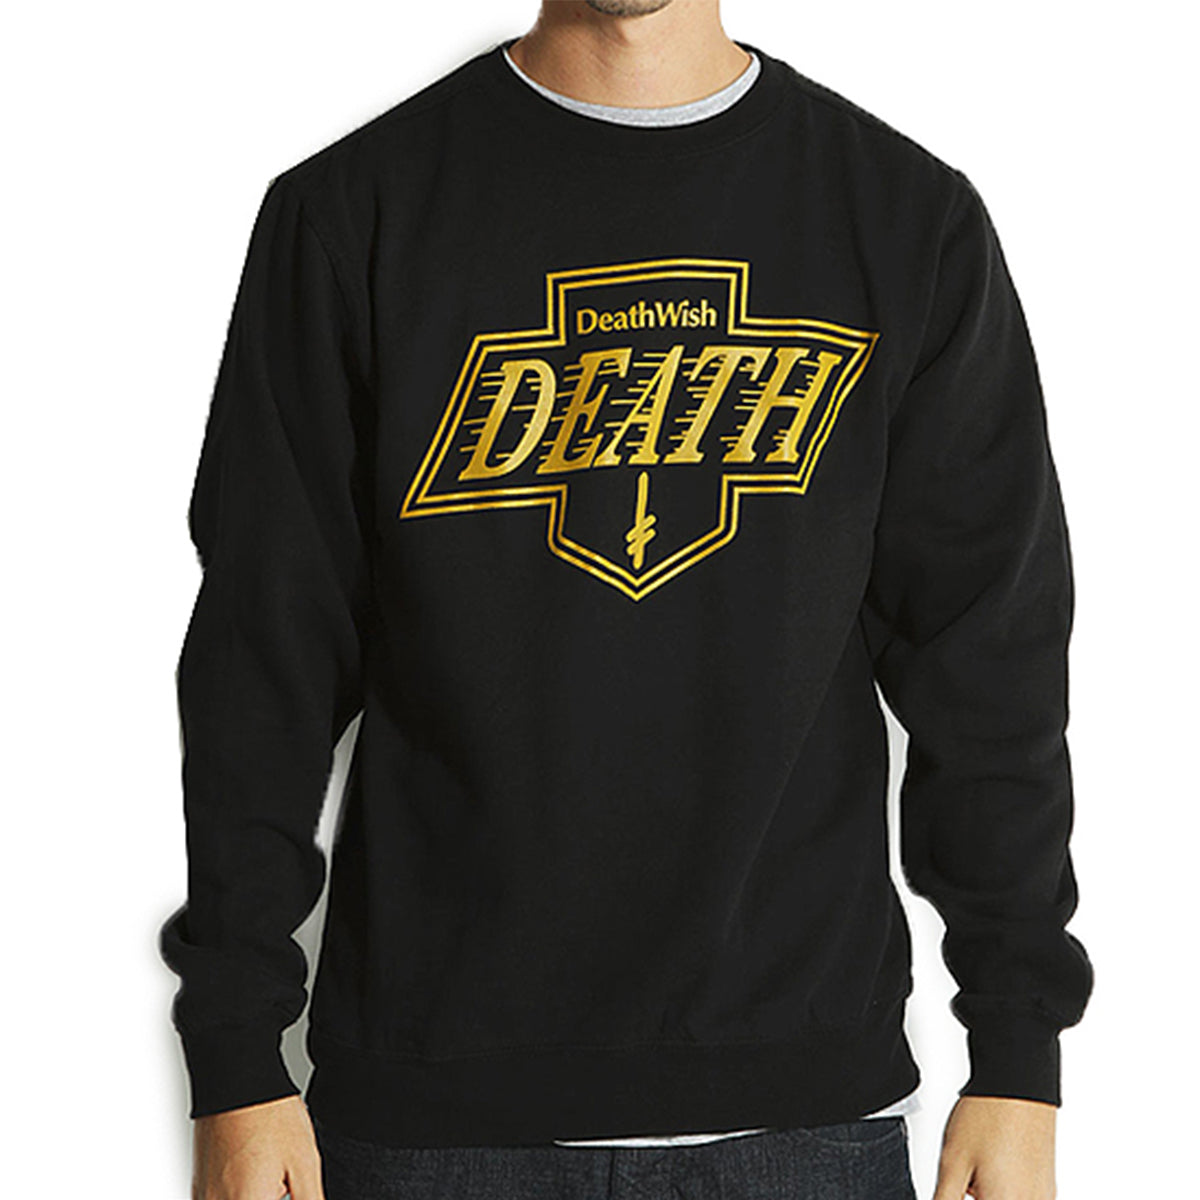 Deathwish Death Kings Men's Sweater Sweatshirts-01-41-0005